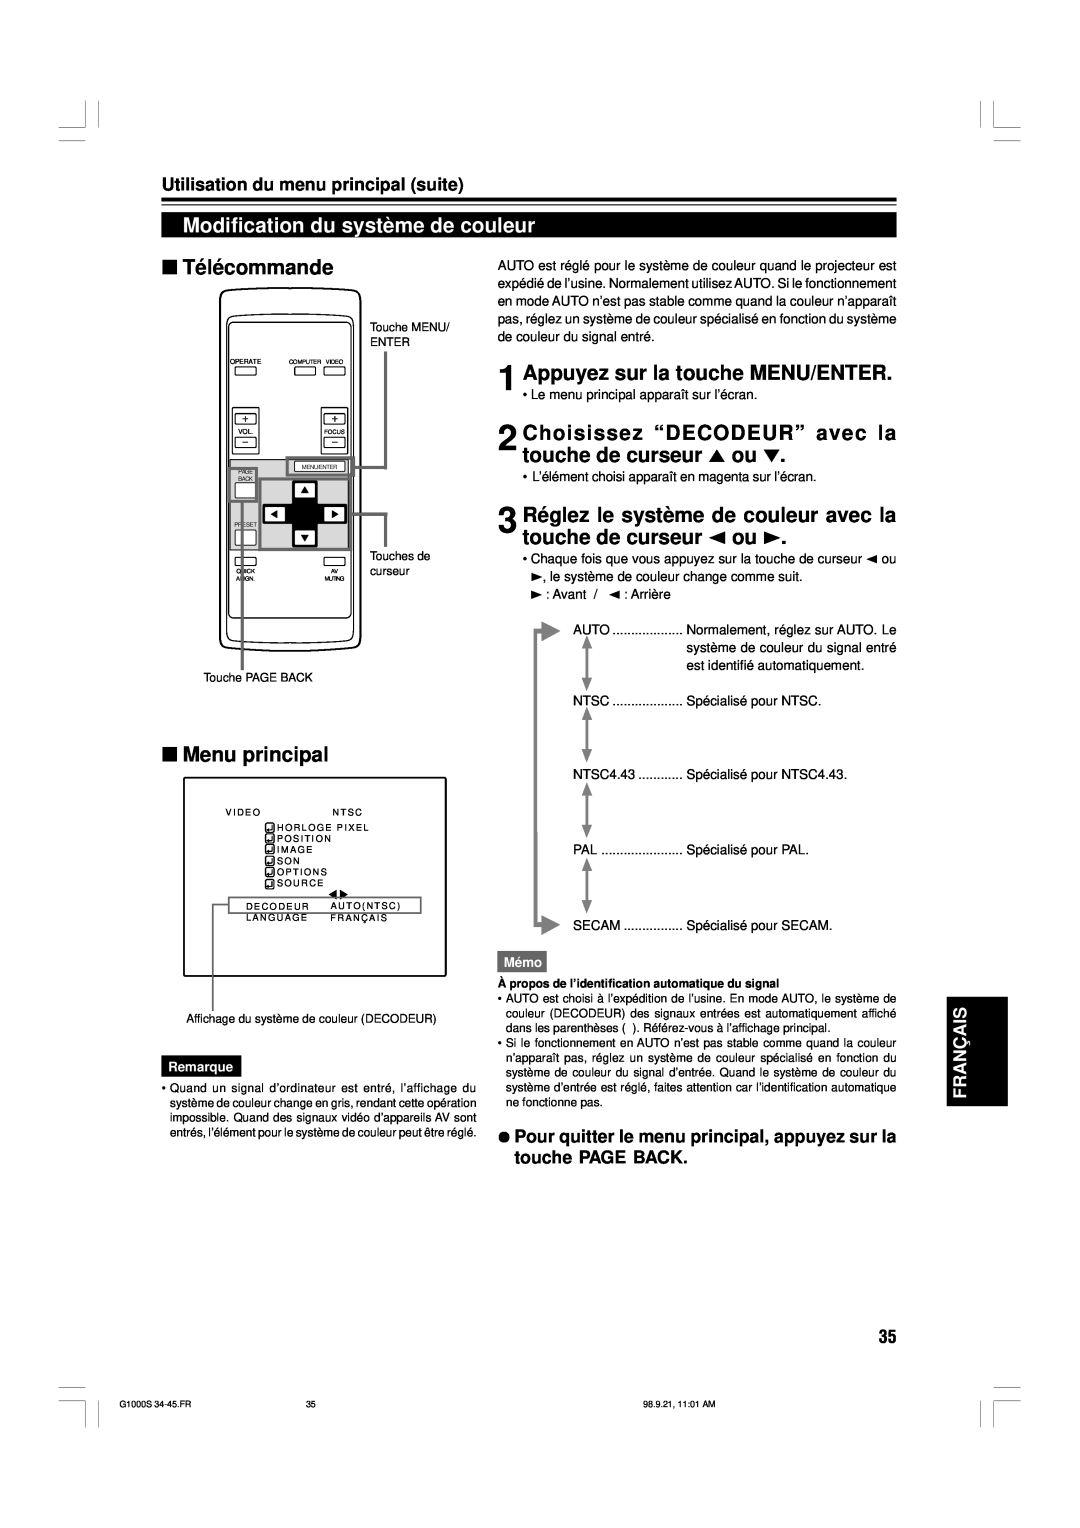 JVC G1000S Modification du système de couleur, Choisissez “DECODEUR” avec la touche de curseur 5 ou, Télécommande, Mémo 